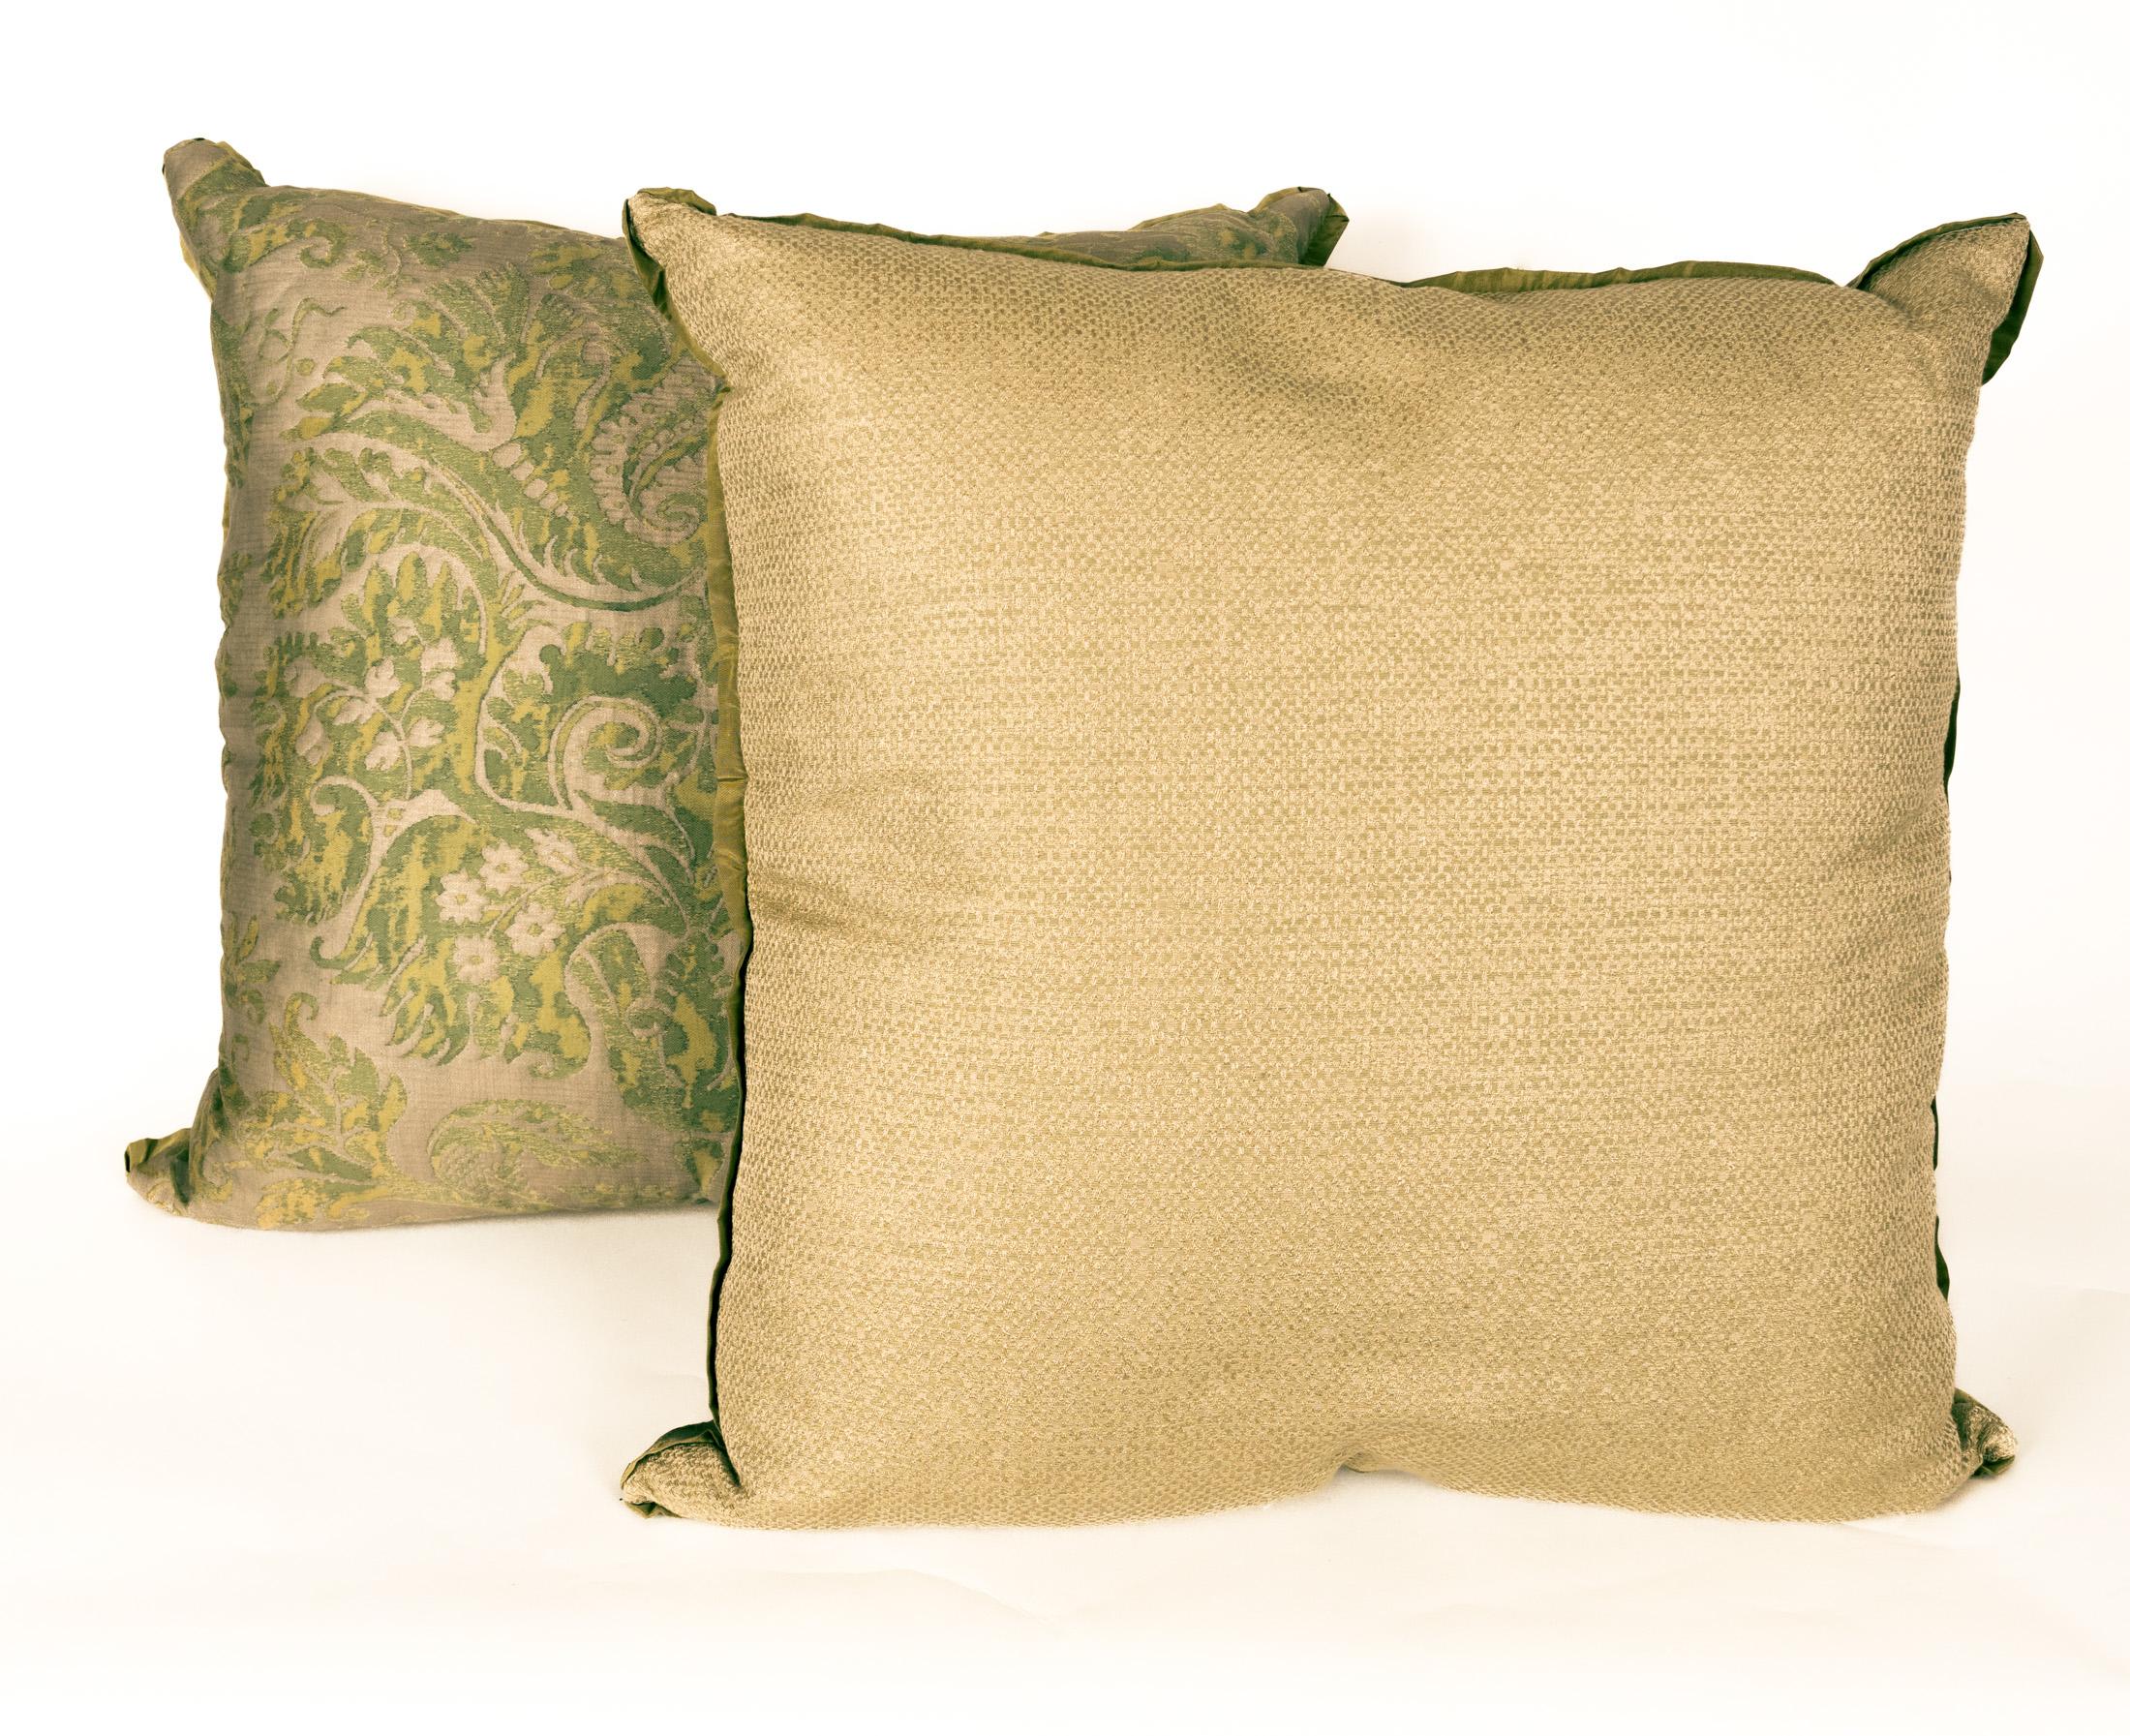 Ein Paar Fortuny-Stoffkissen im DeMedici-Muster, grün und silbrig-golden, mit Schrägbandeinfassung aus Seide und Seidenmischung als Trägermaterial. Das Muster ist ein italienisches Design aus dem 17. Jahrhundert, benannt nach der berühmten